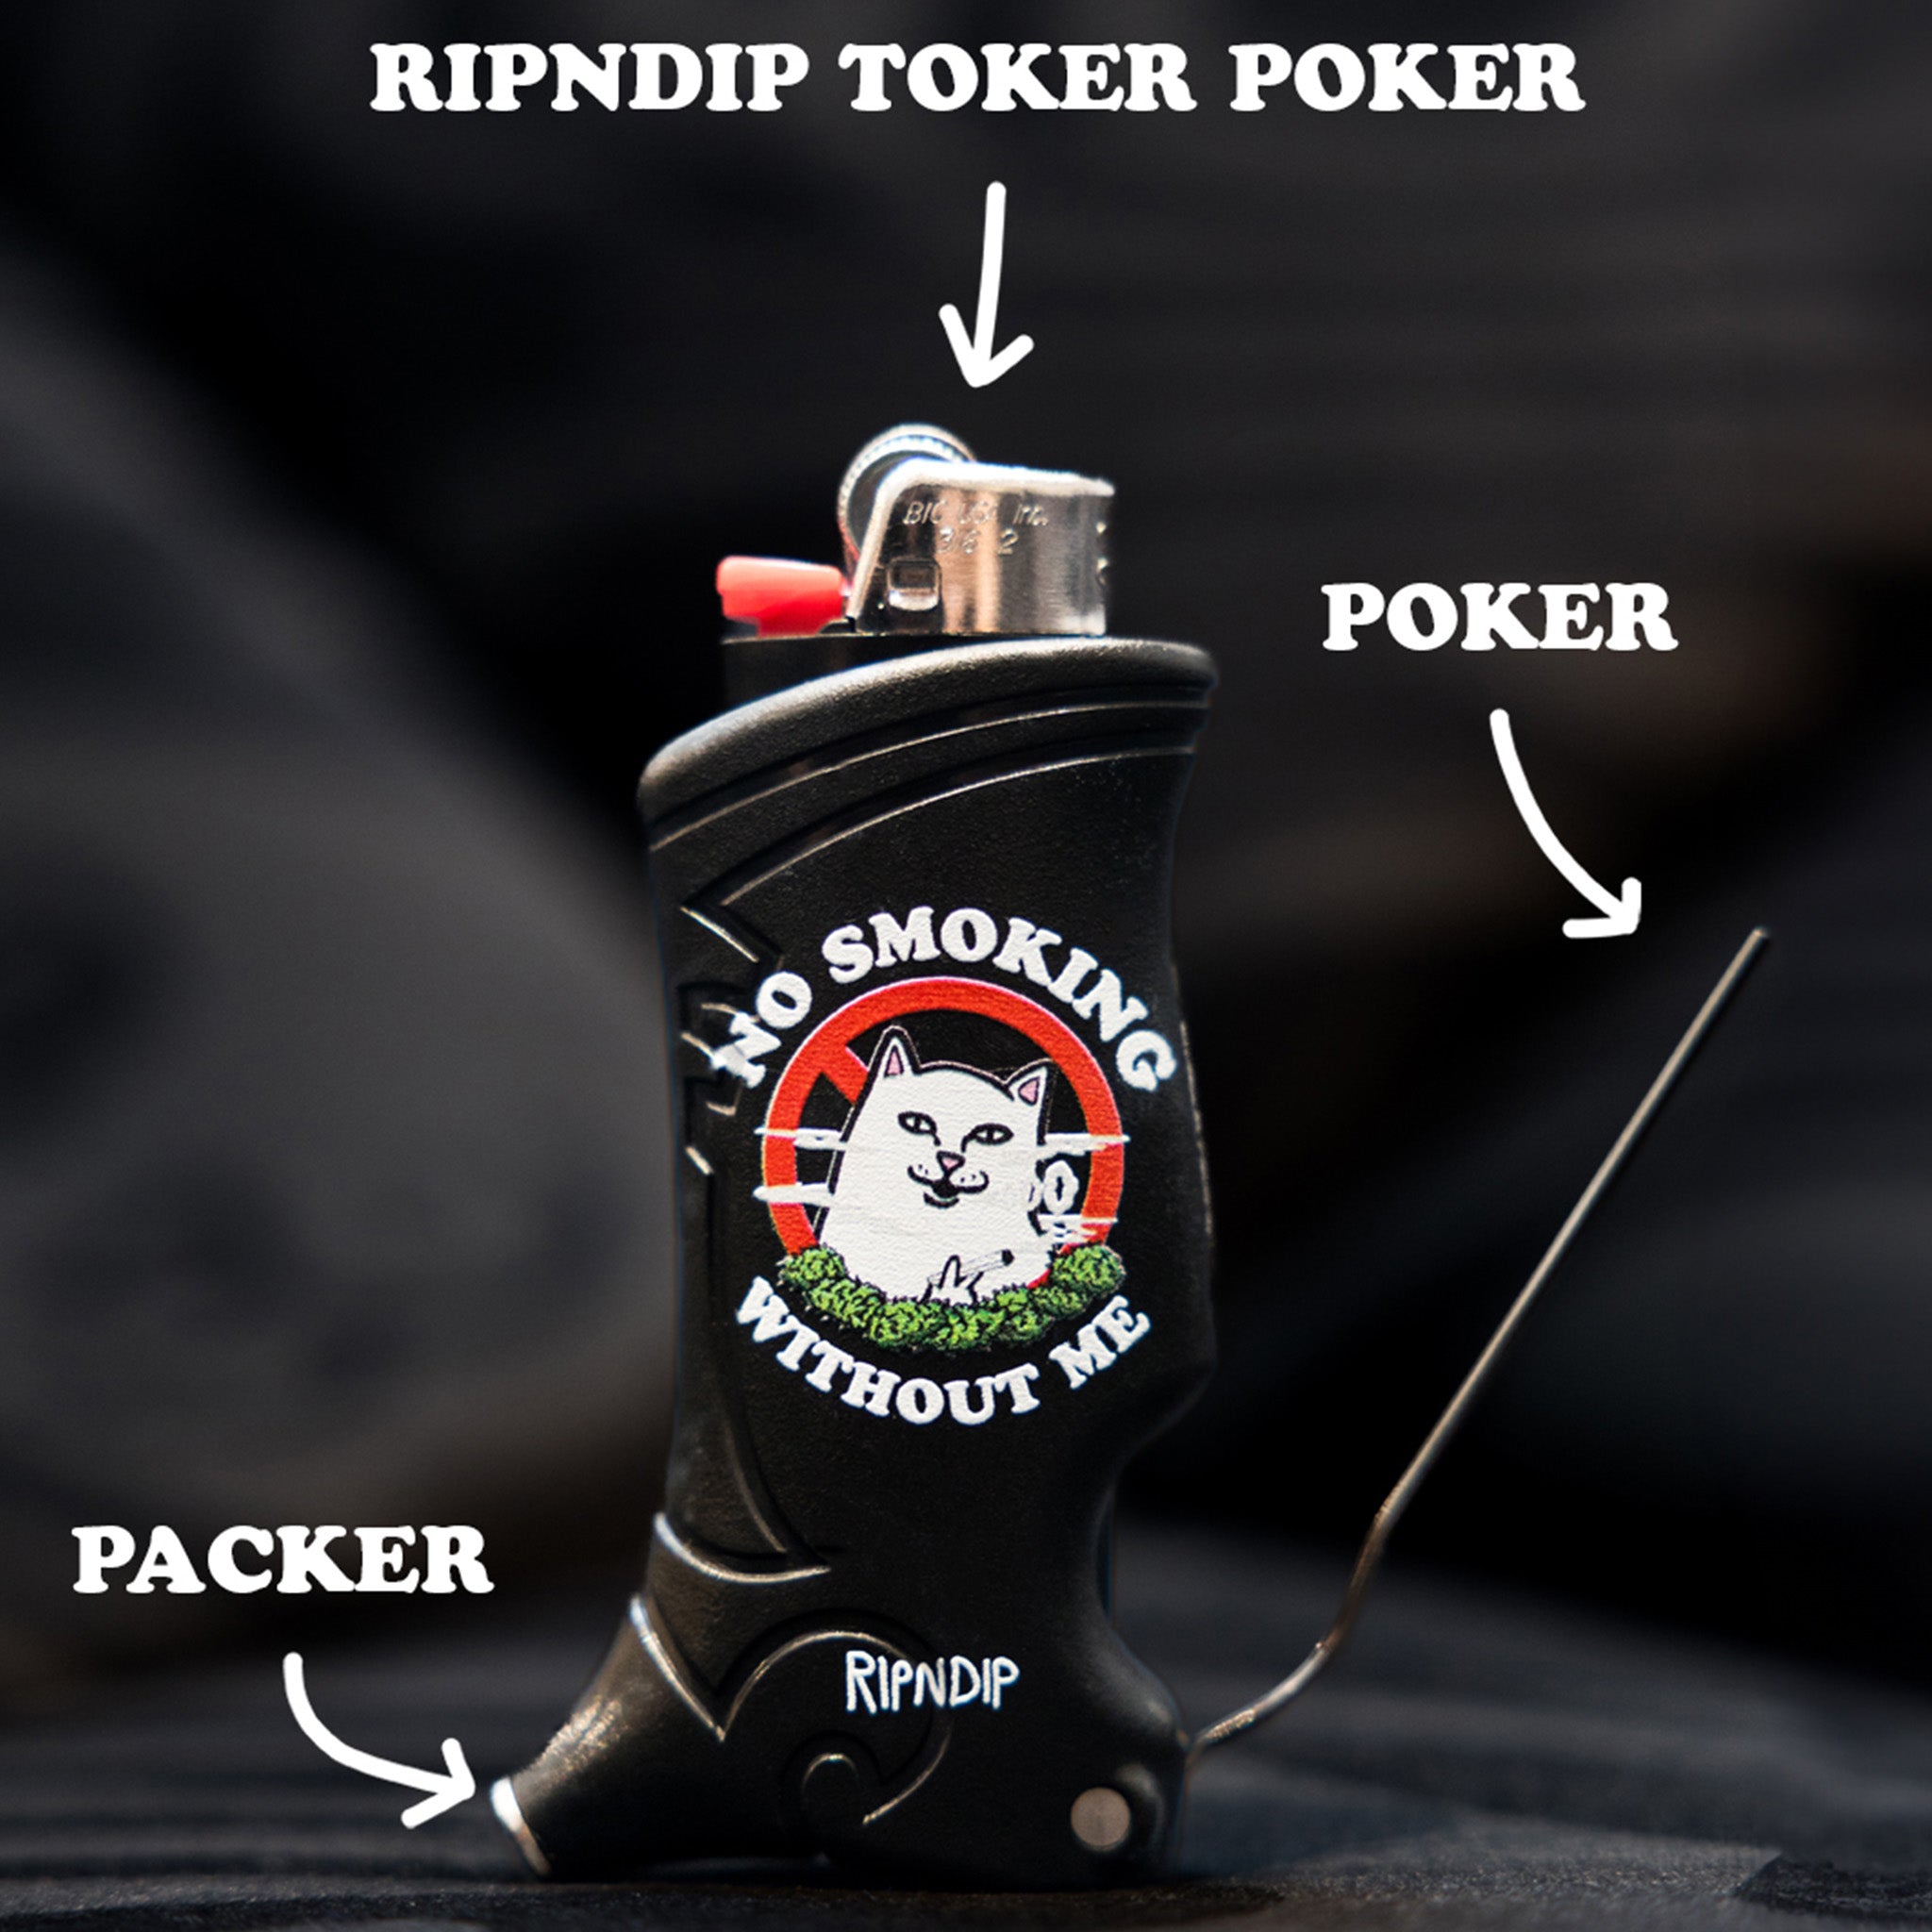 RIPNDIP No Smoking Toker Poker